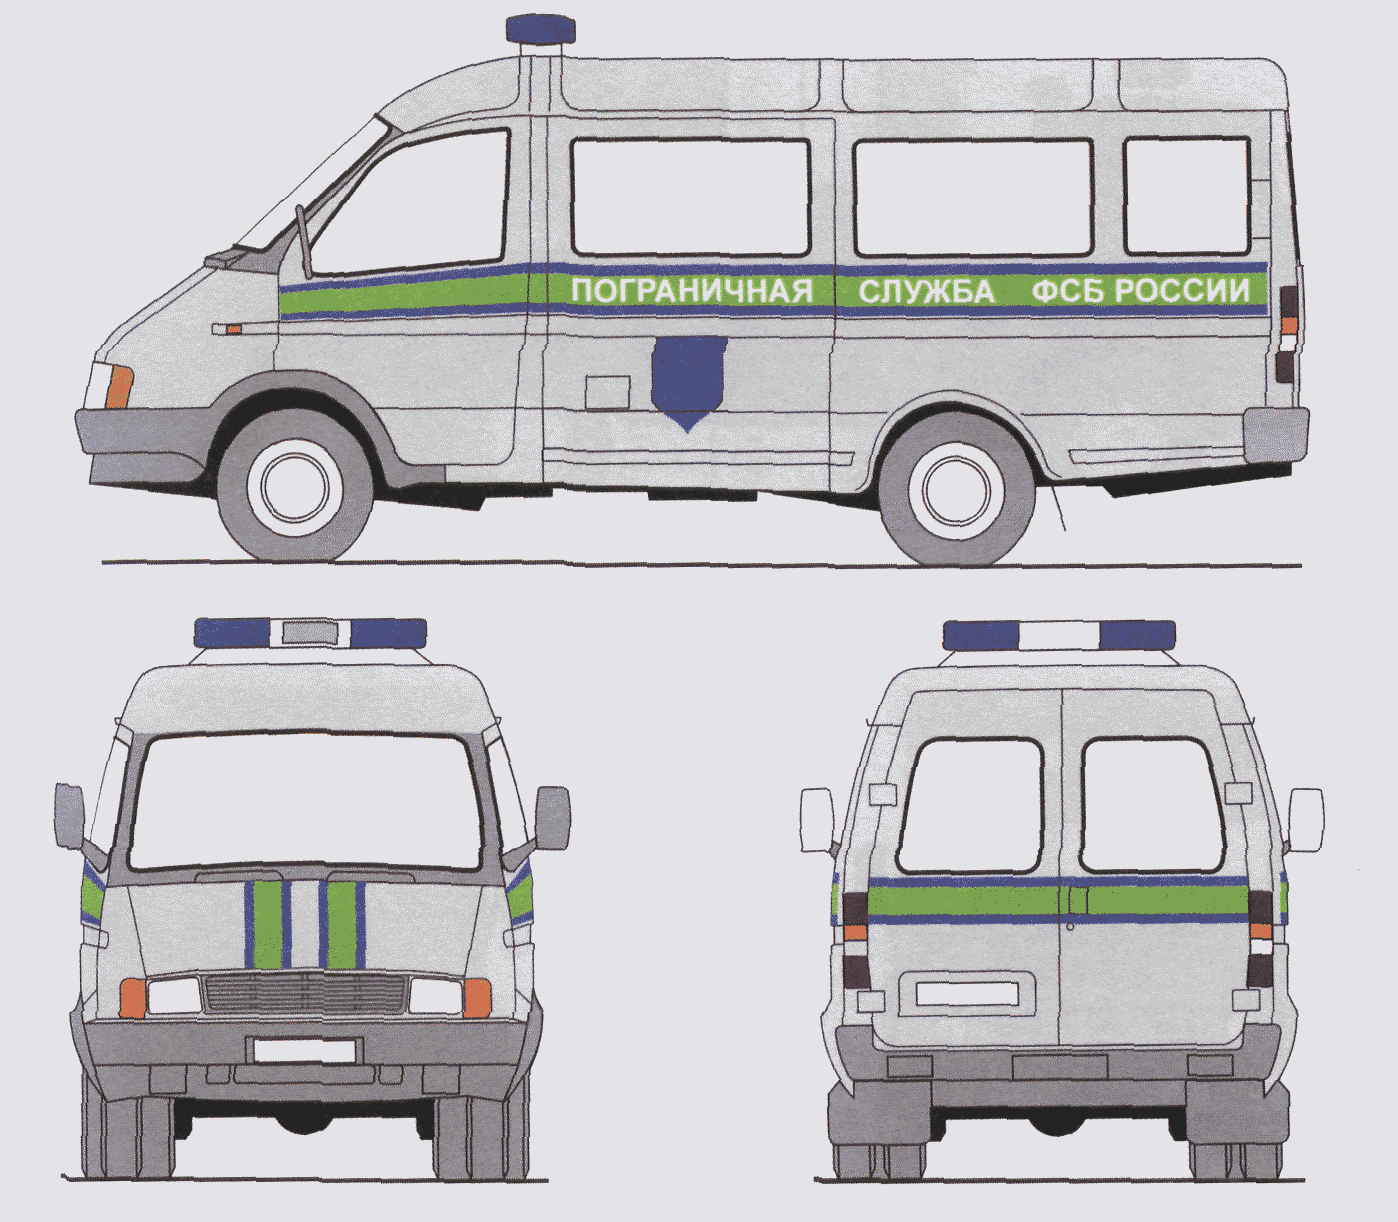 ФСБ Антитеррор цветографическая схема авто